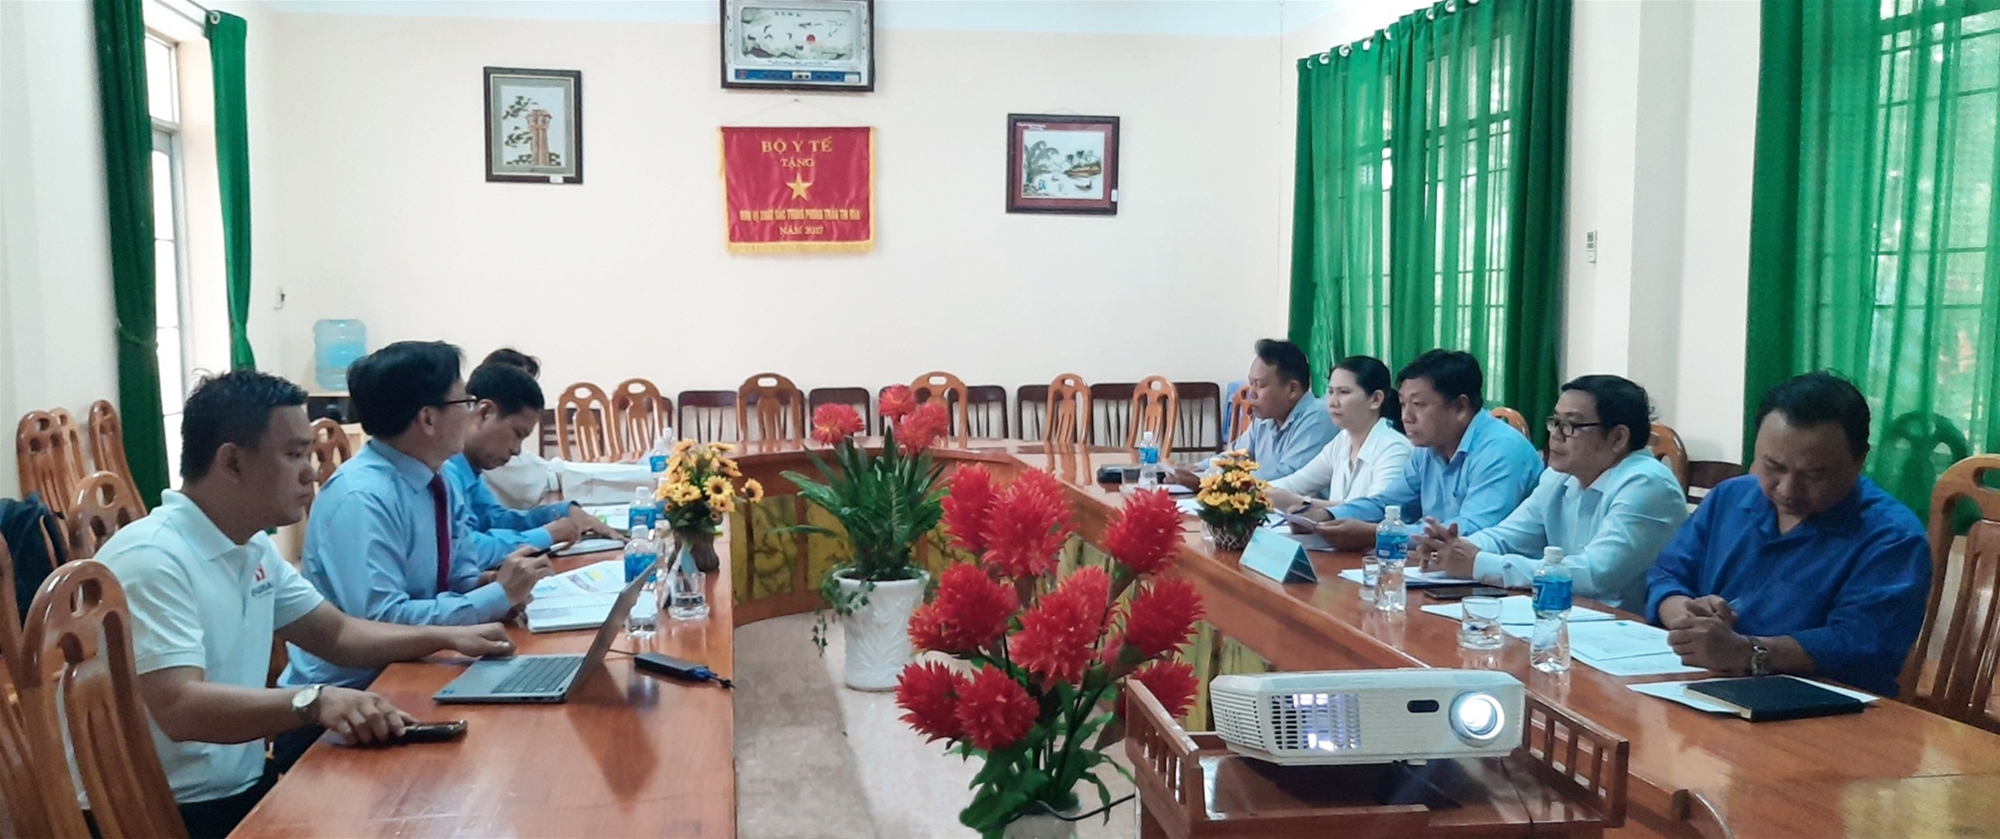 Trường Cao đẳng Bình Thuận đón tiếp và làm việc với Công ty TNHH Esuhai 